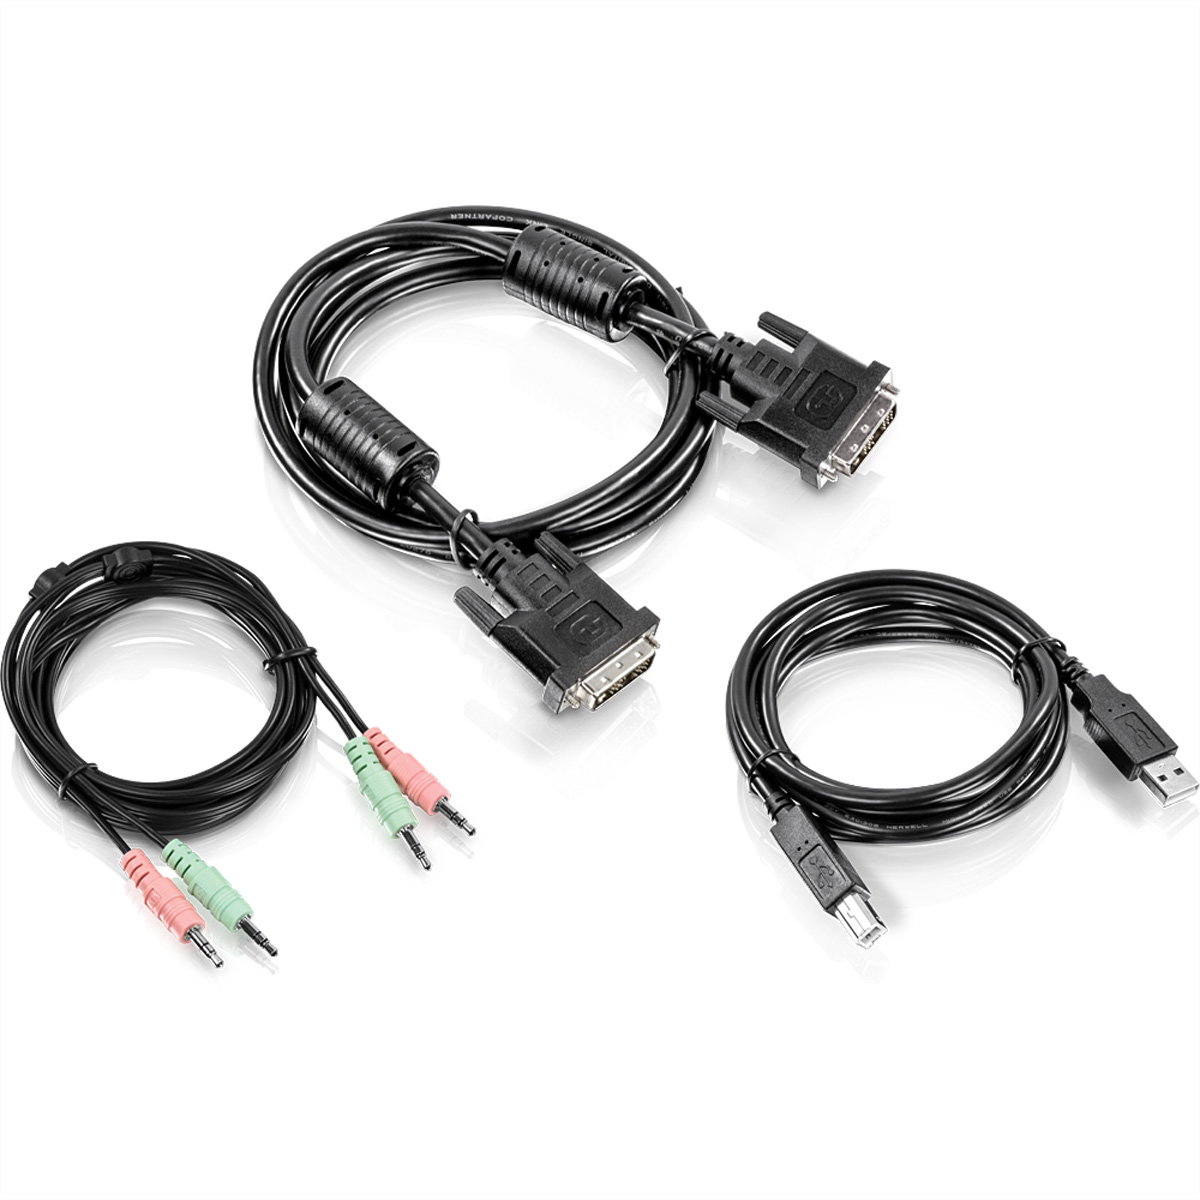 TRENDnet TK-CD06 Kabel-Kit 1.8m für KVM mit DVI-I, USB und Audio